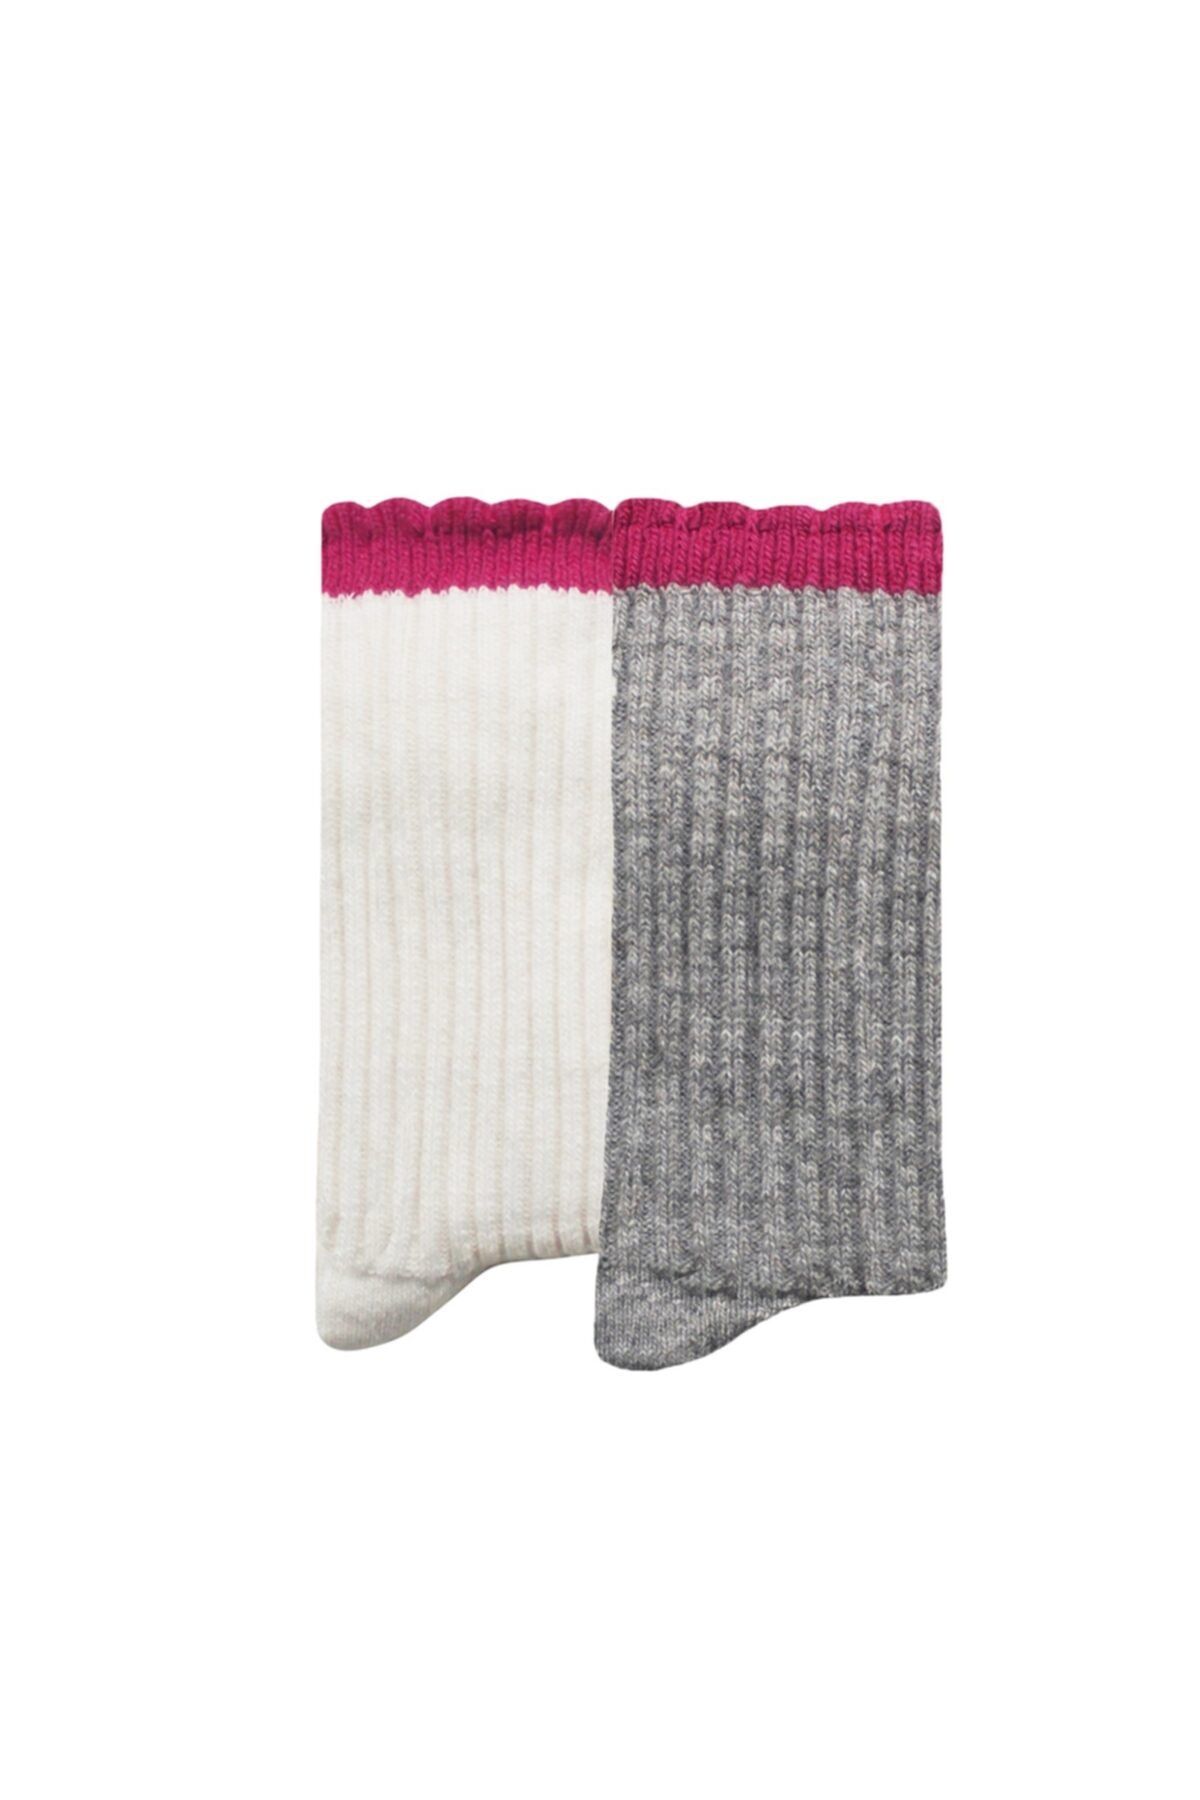 UNLIMITED LEGWEAR 2li Kalın Kışlık Yün Ve Kaşmir Karışımlı Bileği Dilimli Kadın Çorap Gri/krem